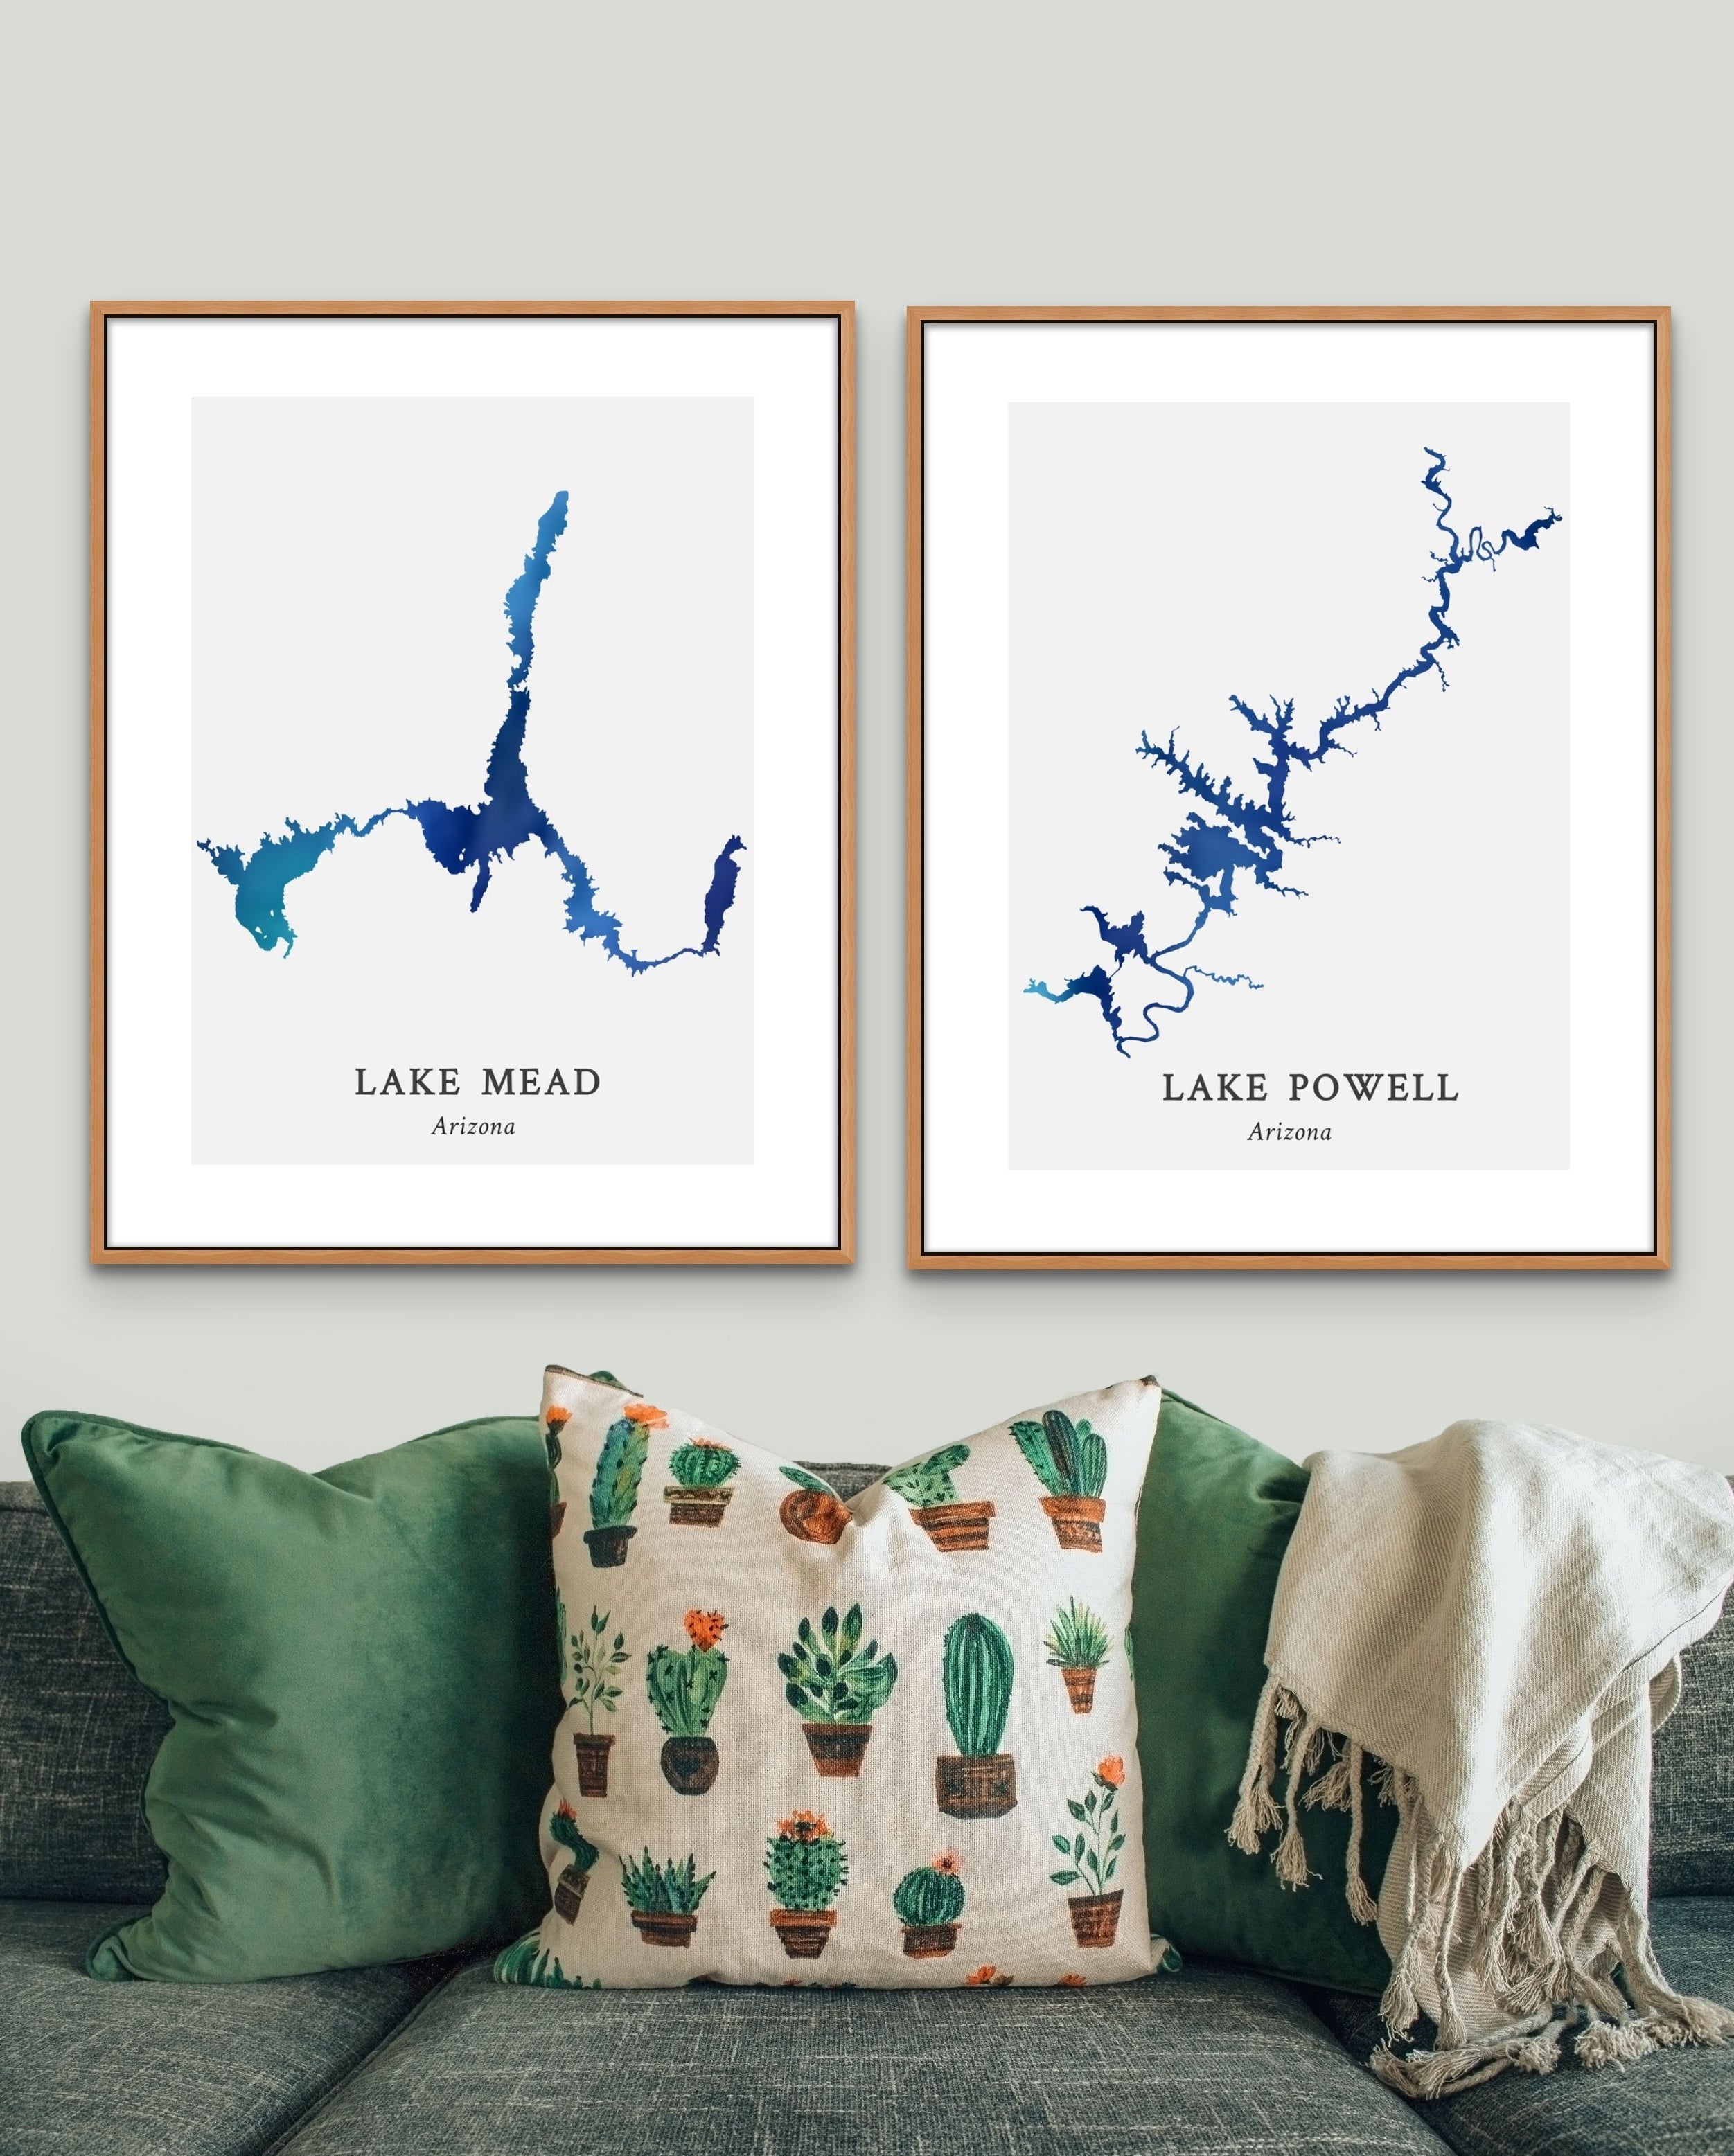 Great Lakes - Lake Superior